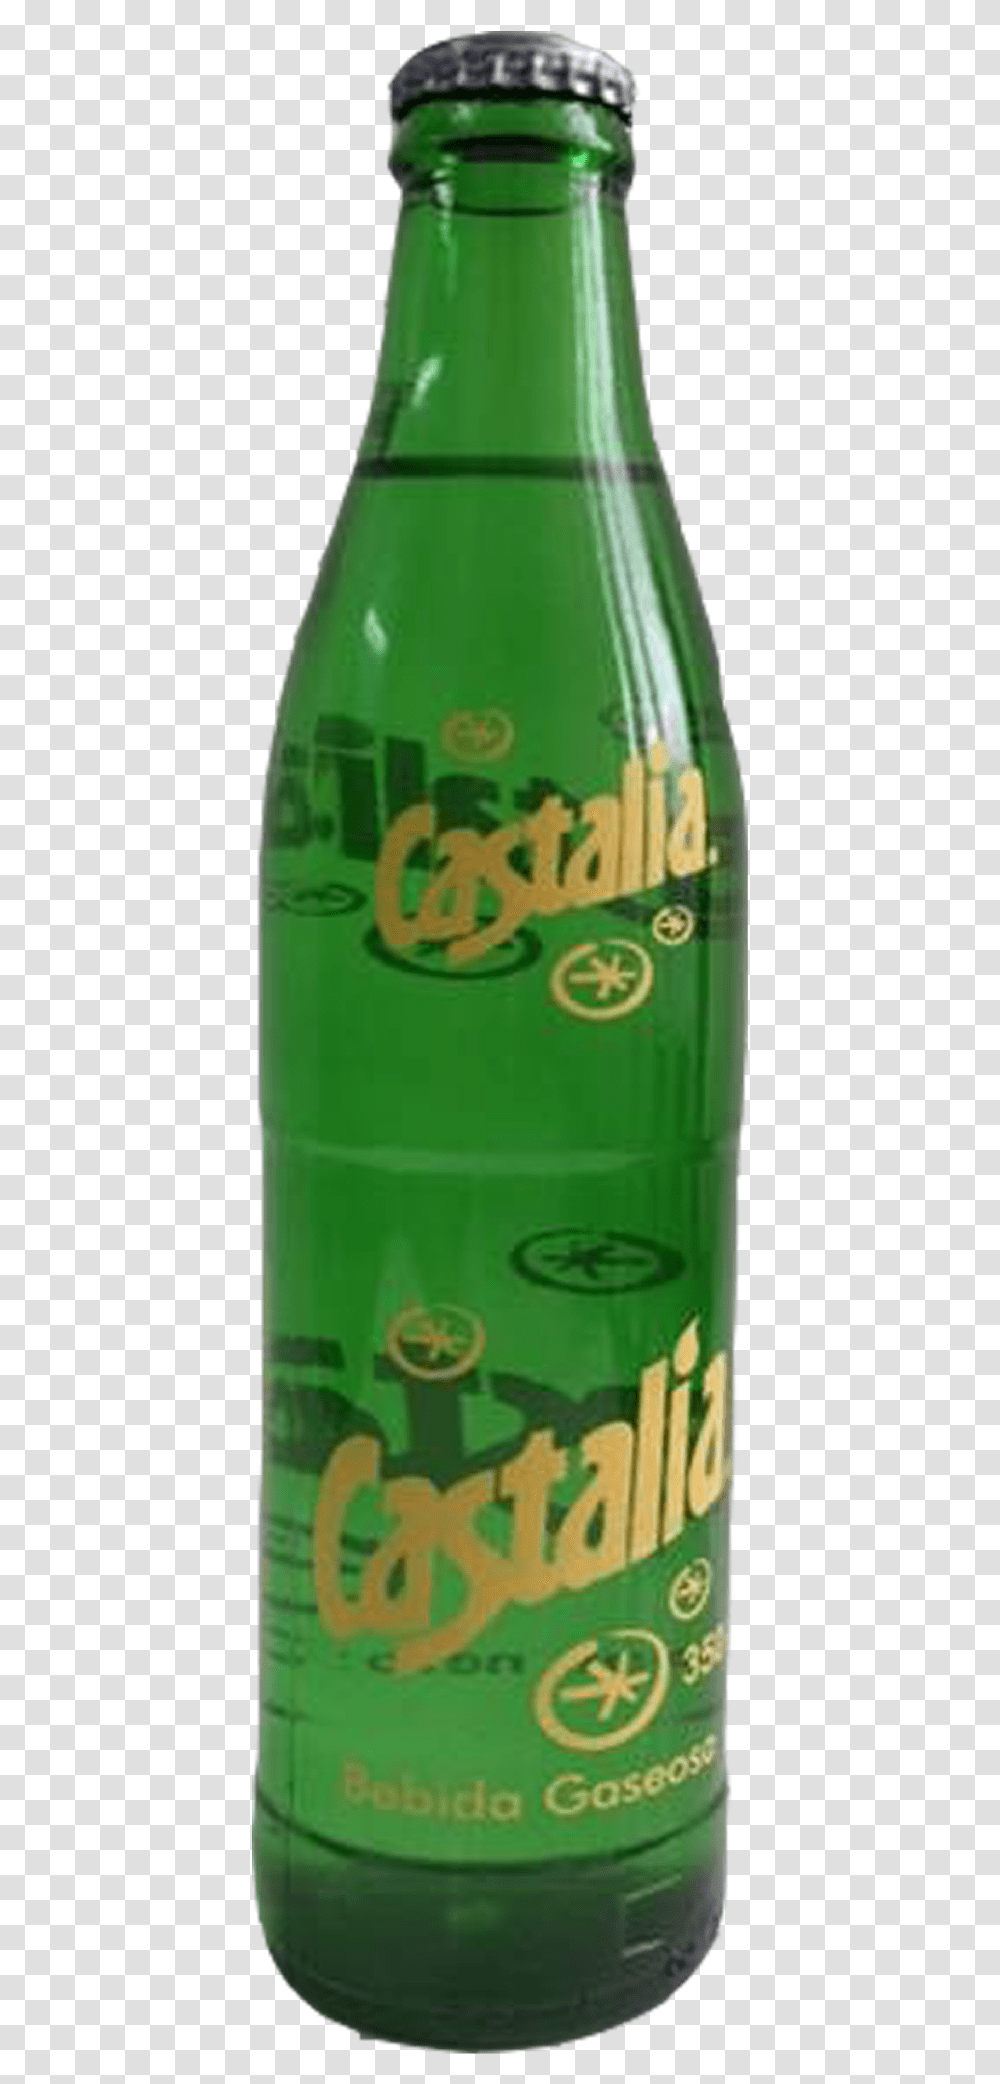 Castalia Beer Bottle, Soda, Beverage, Drink, Pop Bottle Transparent Png